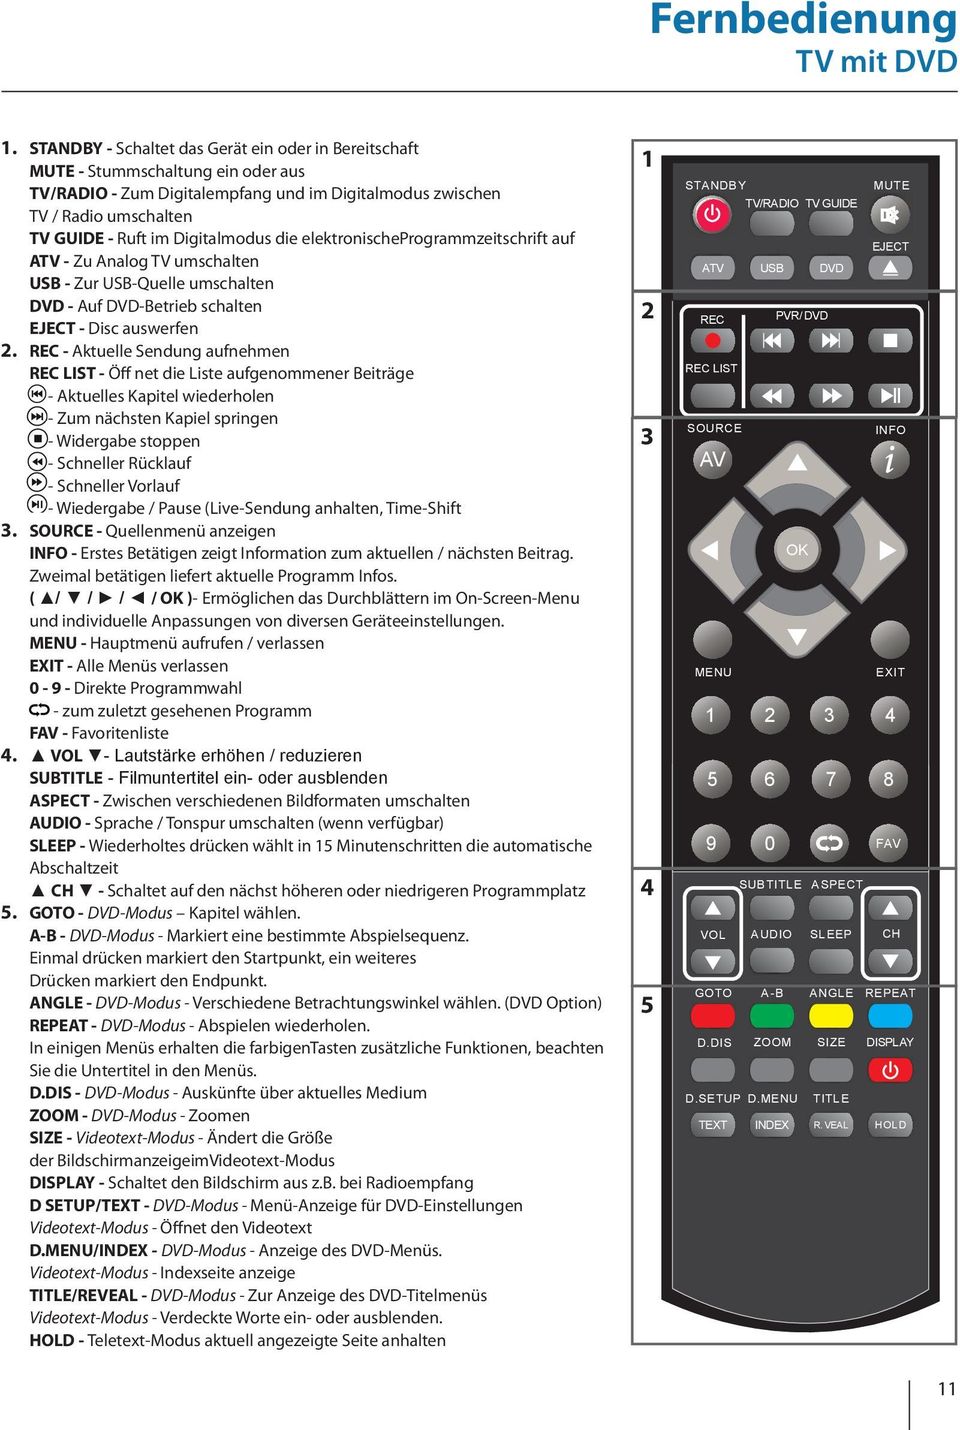 Digitalmodus die elektronischeprogrammzeitschrift auf ATV - Zu Analog TV umschalten USB - Zur USB-Quelle umschalten DVD - Auf DVD-Betrieb schalten EJECT - Disc auswerfen 2.